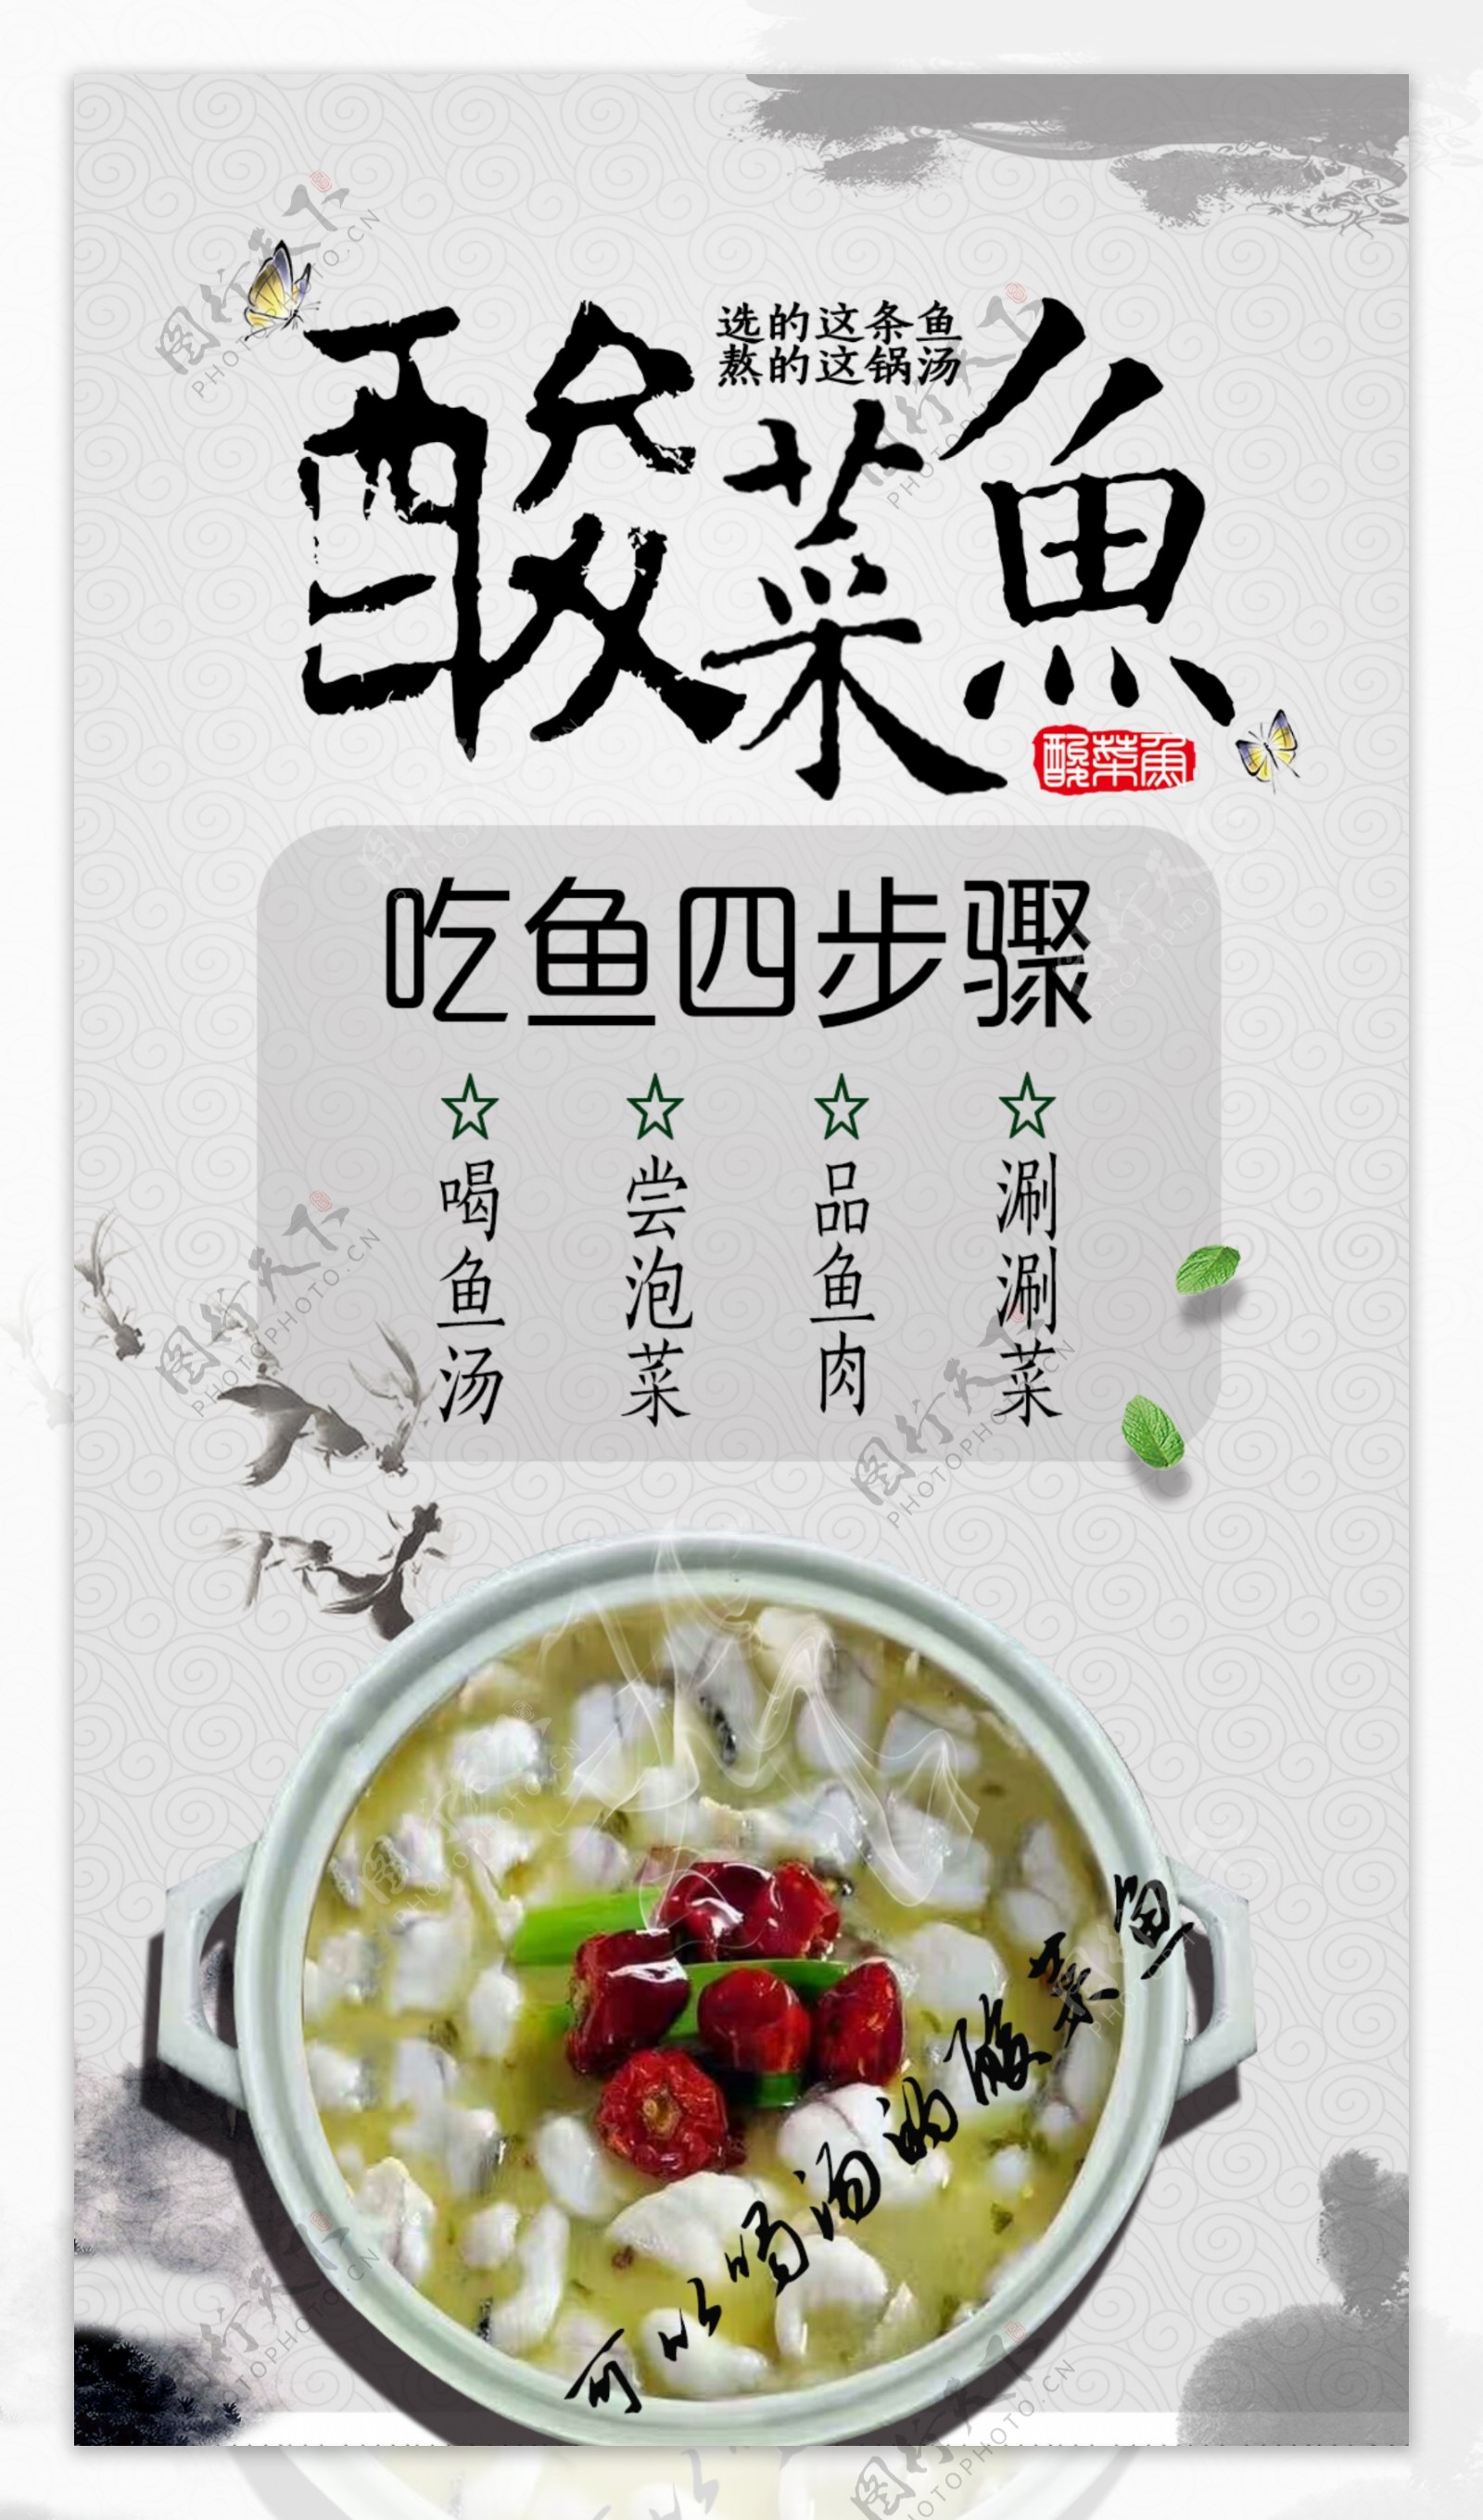 酸菜鱼宣传海报